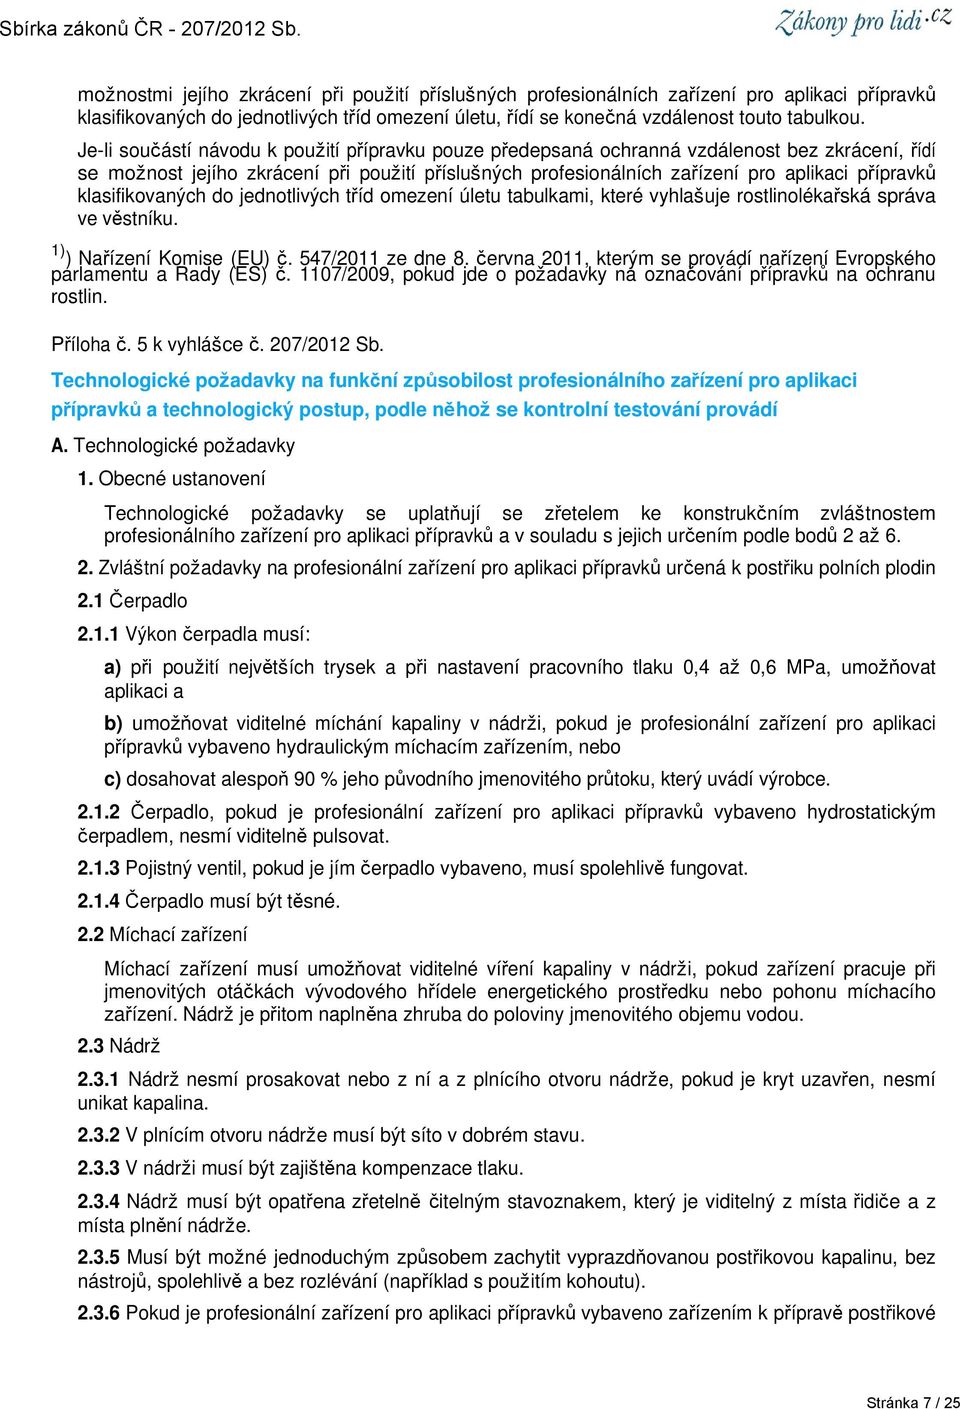 klasifikovaných do jednotlivých tříd omezení úletu tabulkami, které vyhlašuje rostlinolékařská správa ve věstníku. 1) ) Nařízení Komise (EU) č. 547/2011 ze dne 8.